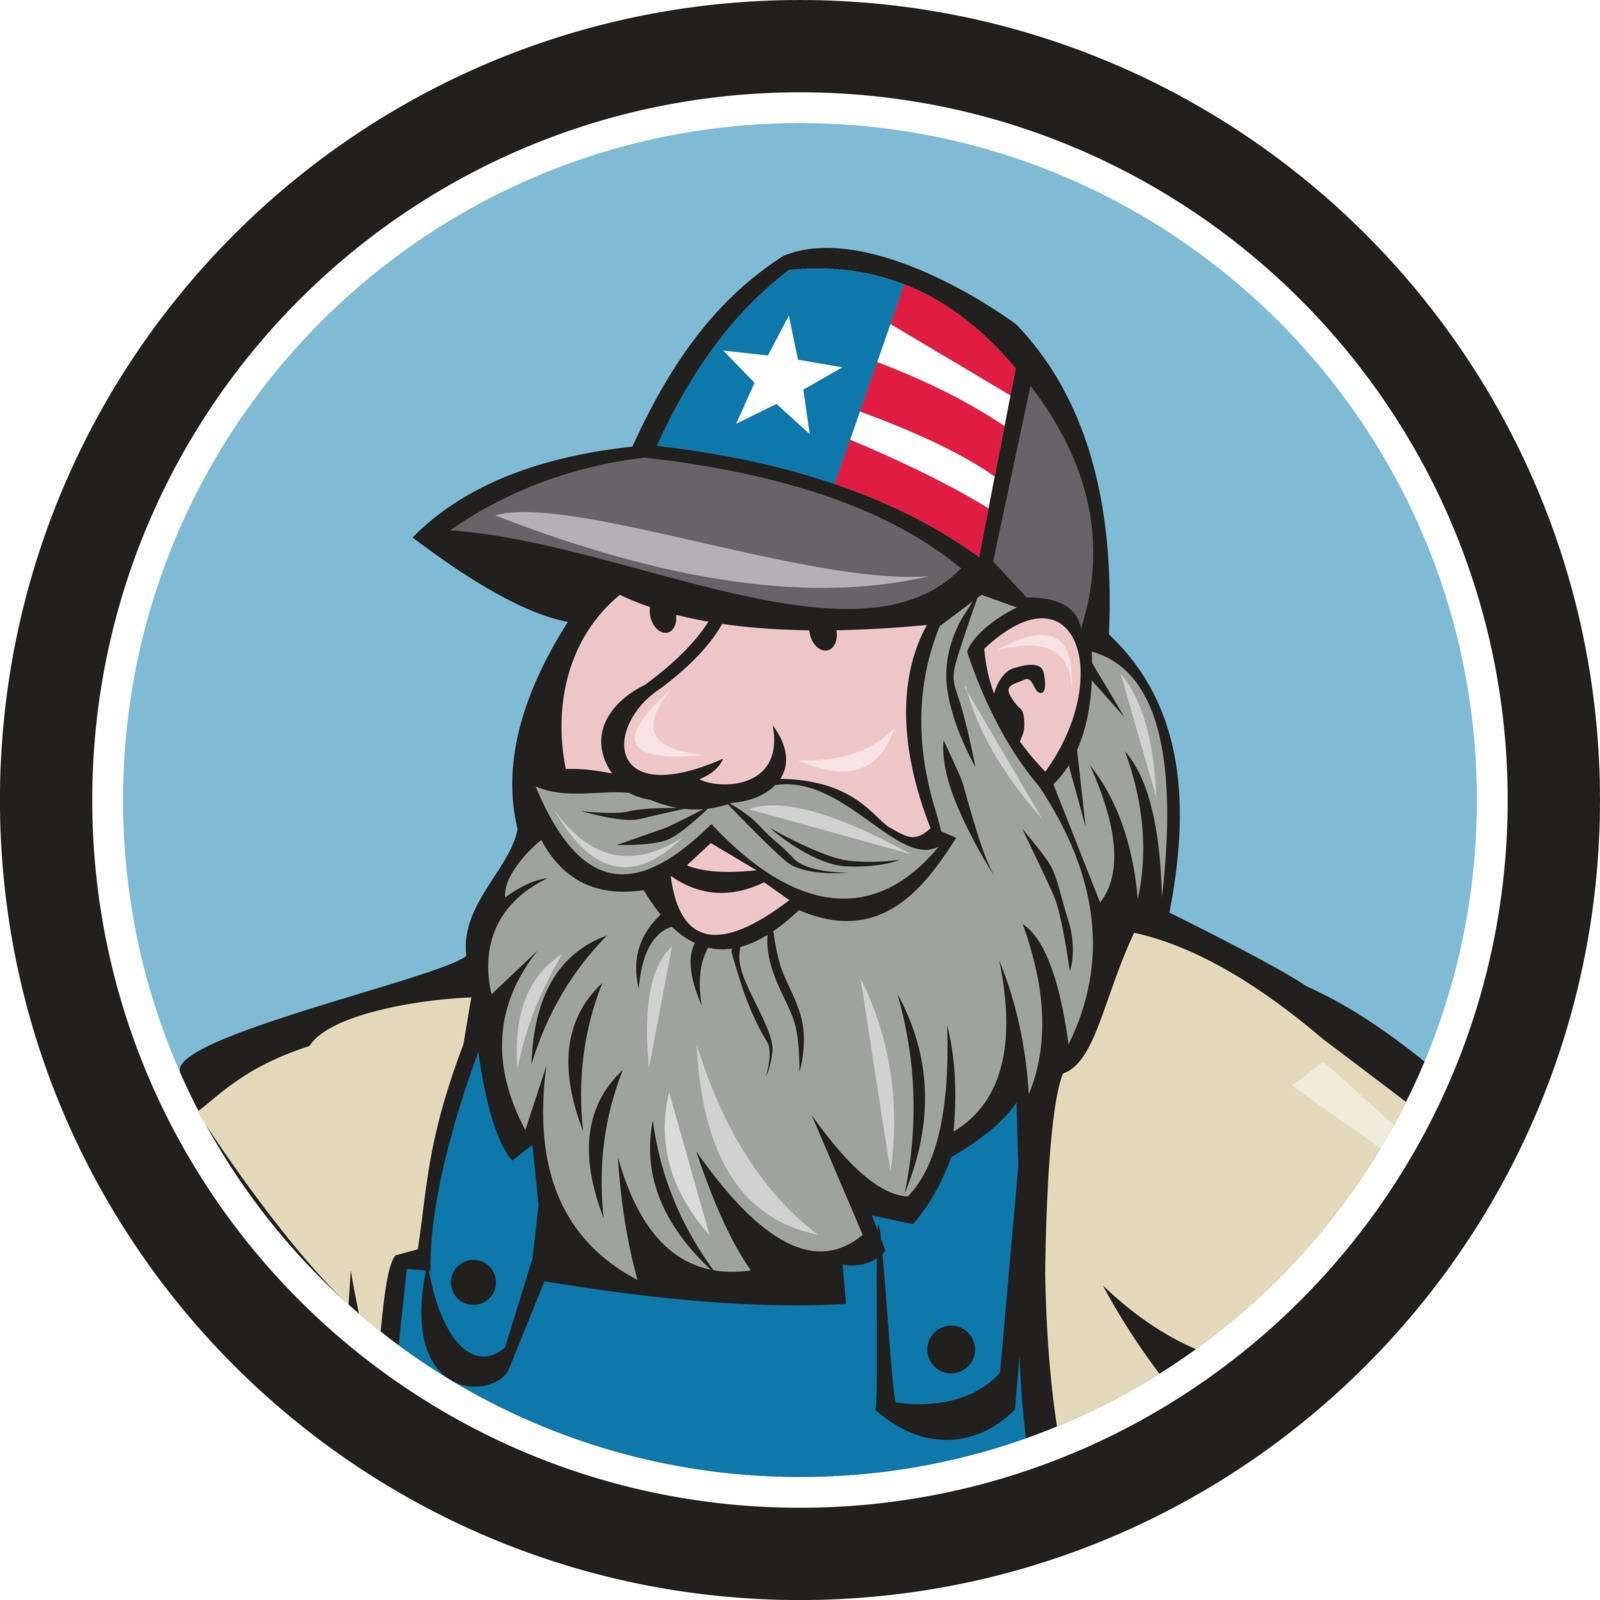 Hillbilly Man Beard Circle Cartoon by patrimonio